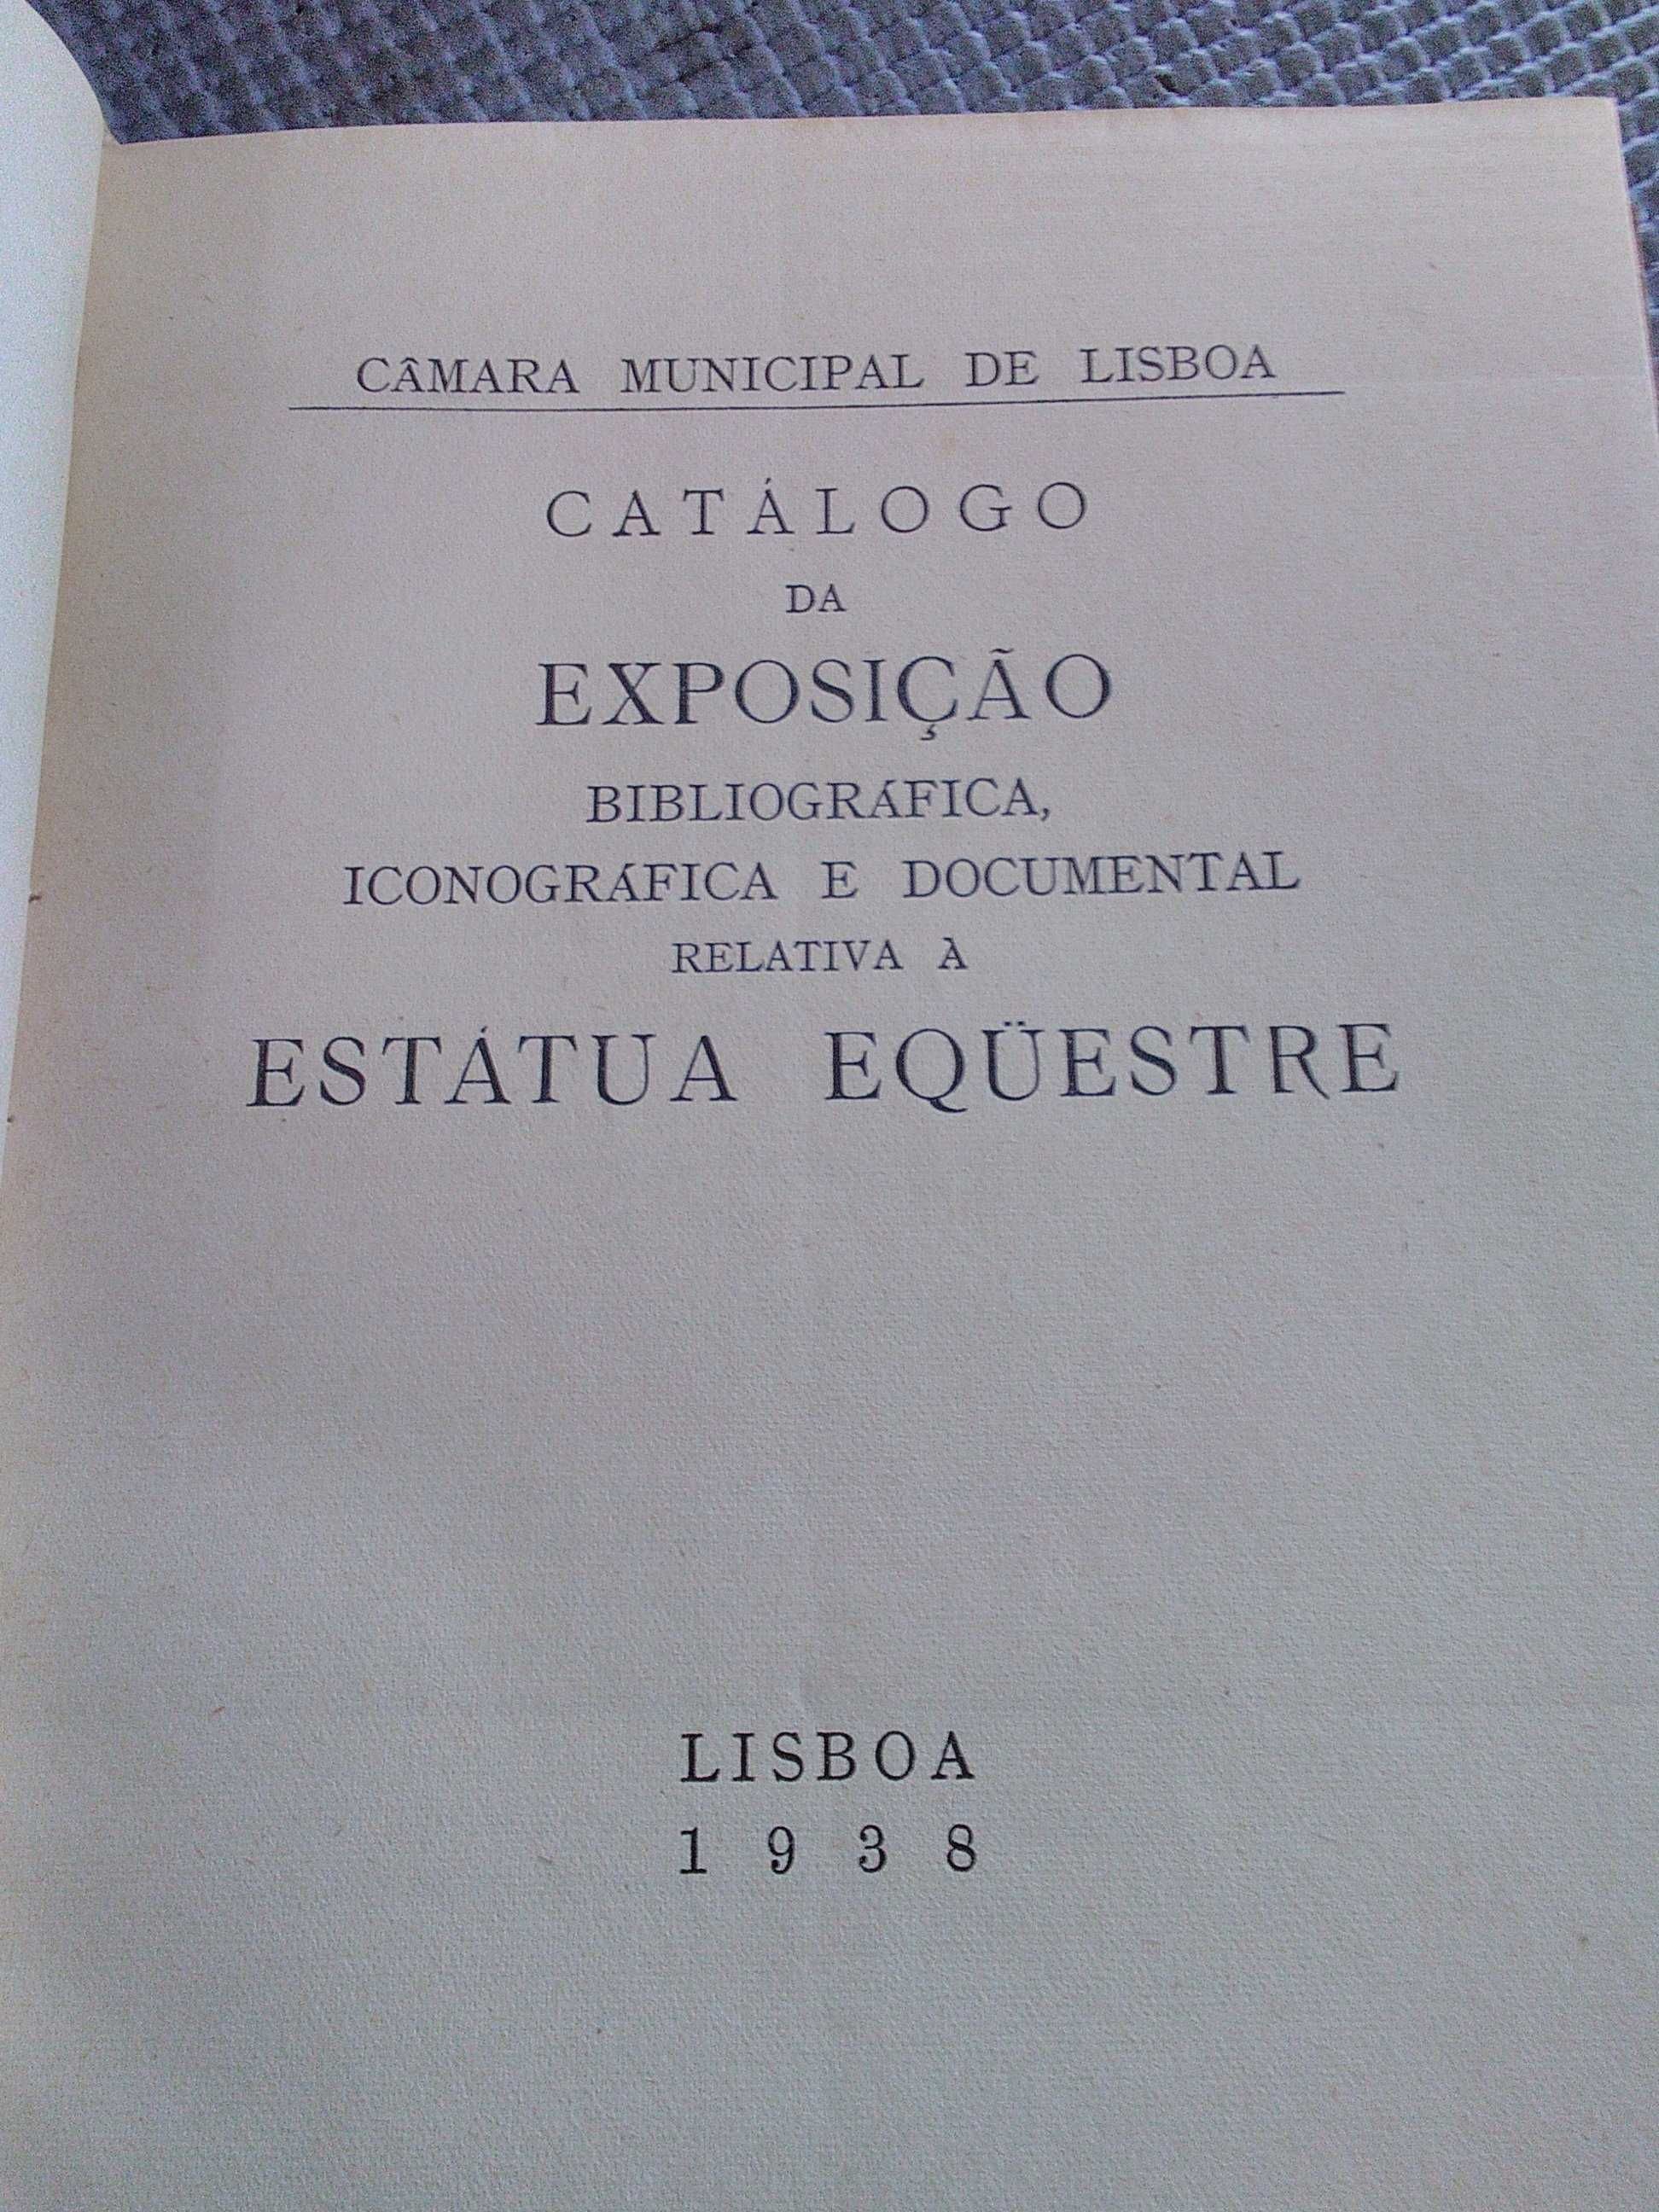 Catálogo da Exposição relativa a Estátua Equestre (1938)